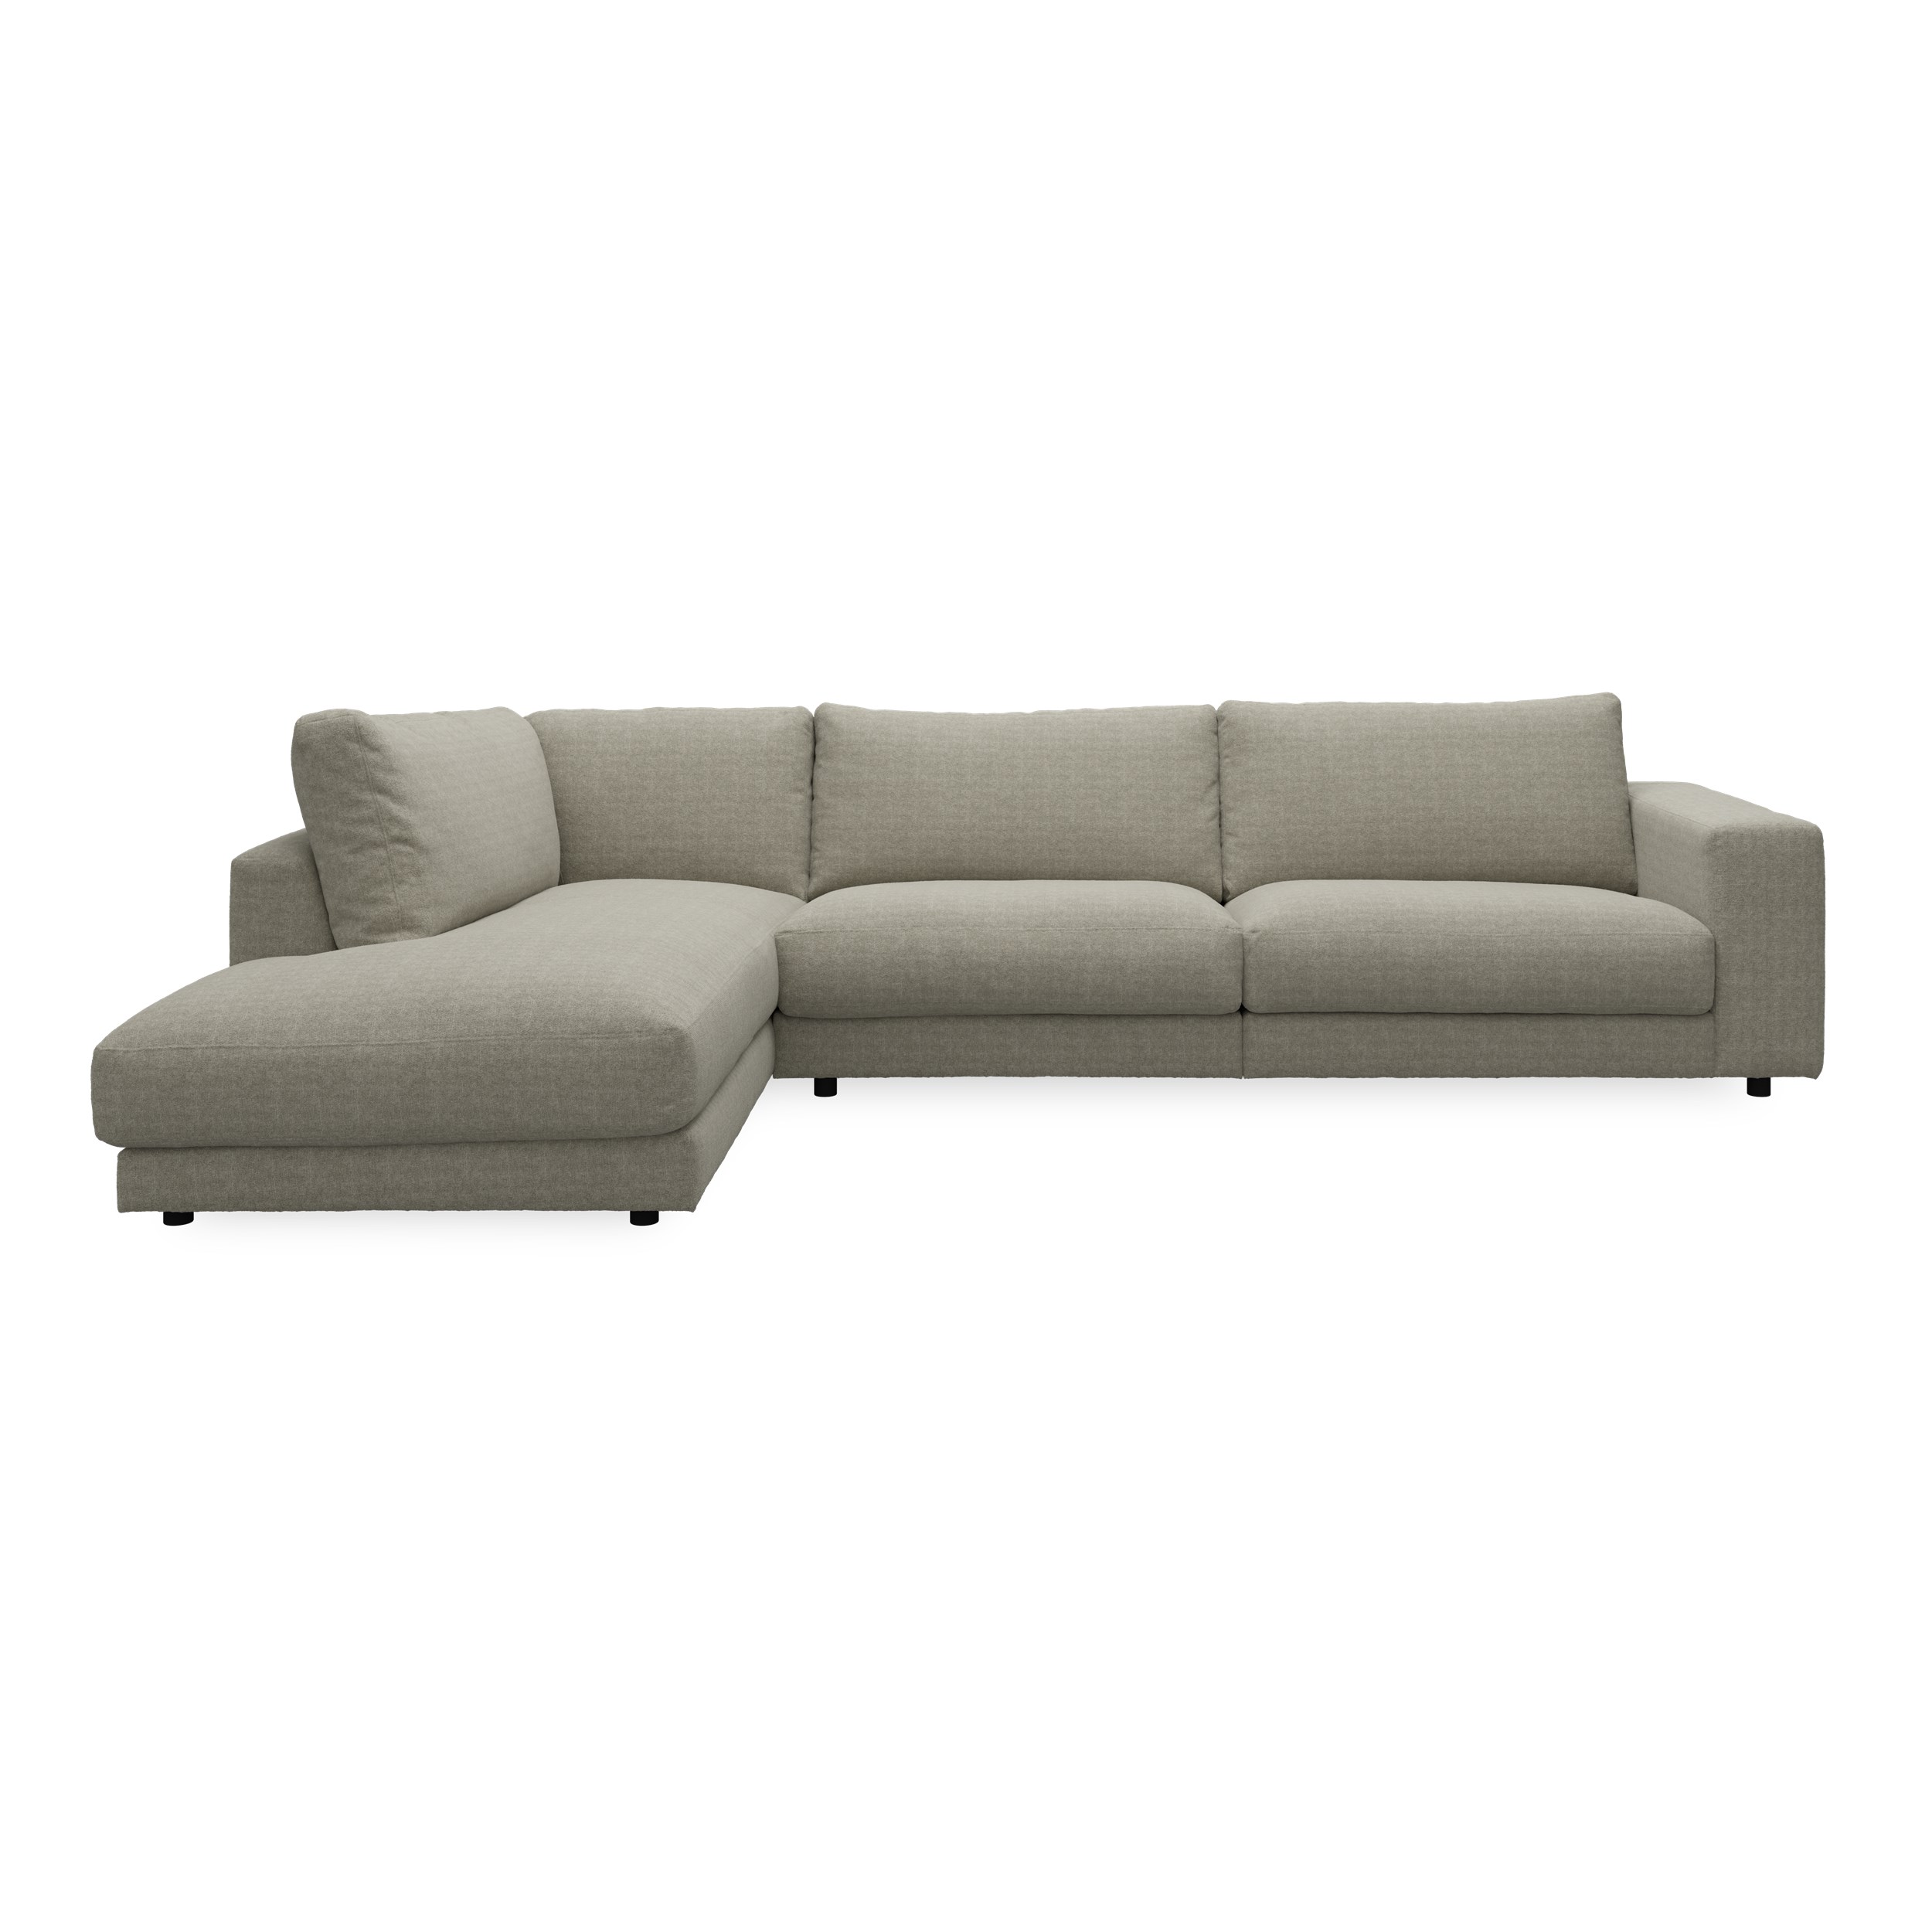 Bennent vänstervänd soffa med divan - Yelda Taupe klädsel, ben i svart plast och S:skum/fib/din/sili R:Dun/skum